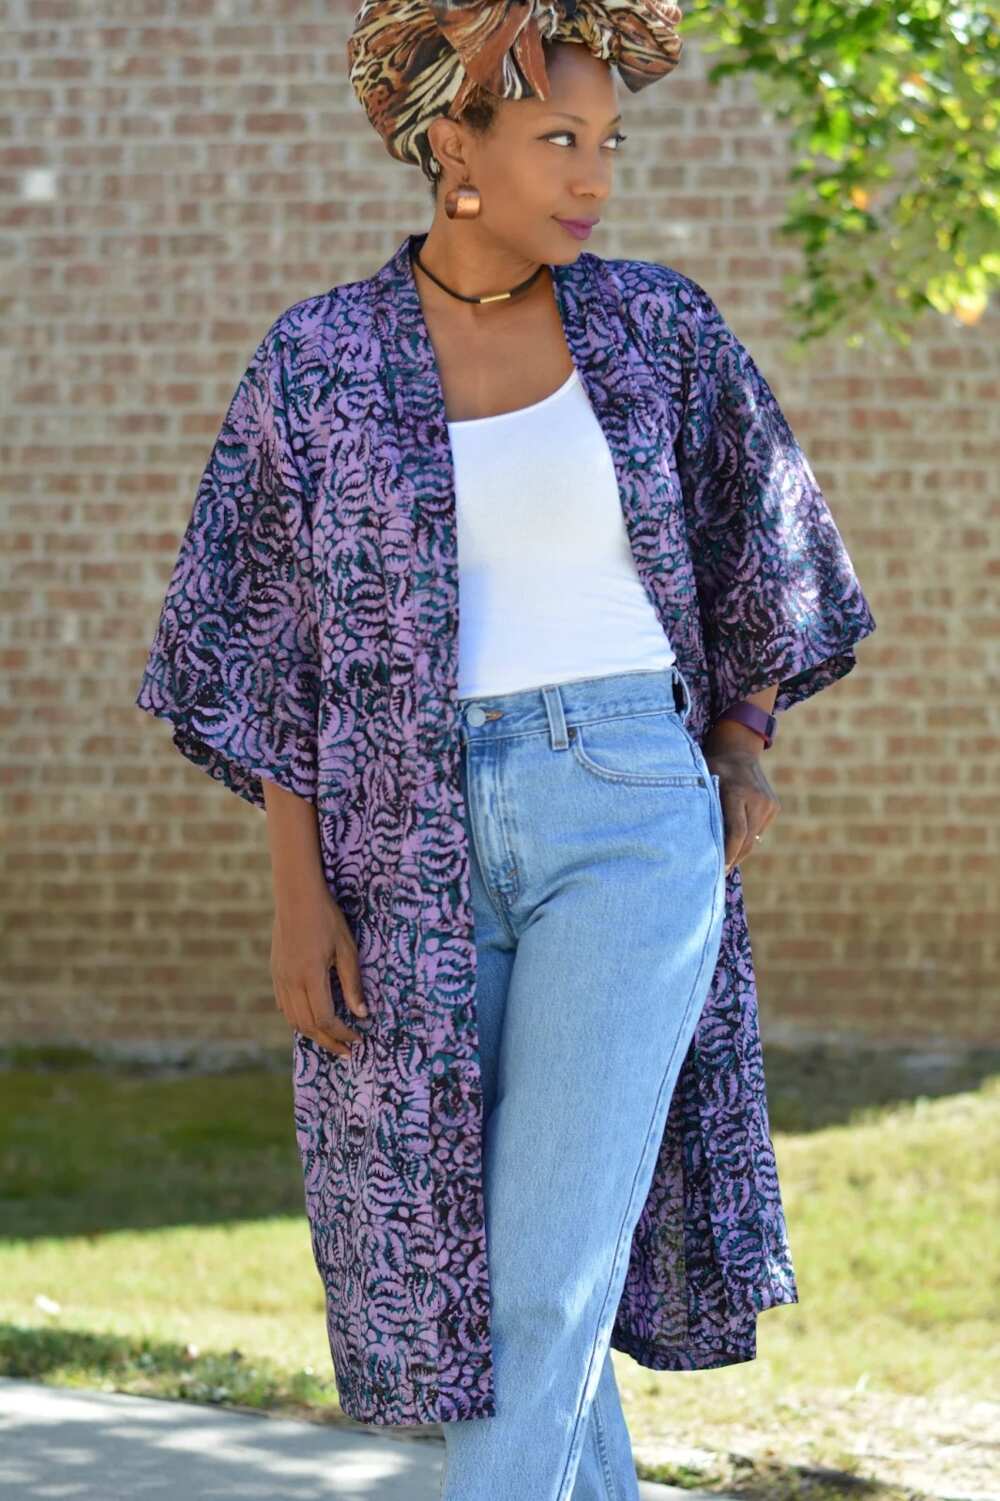 Kimono style with jeans